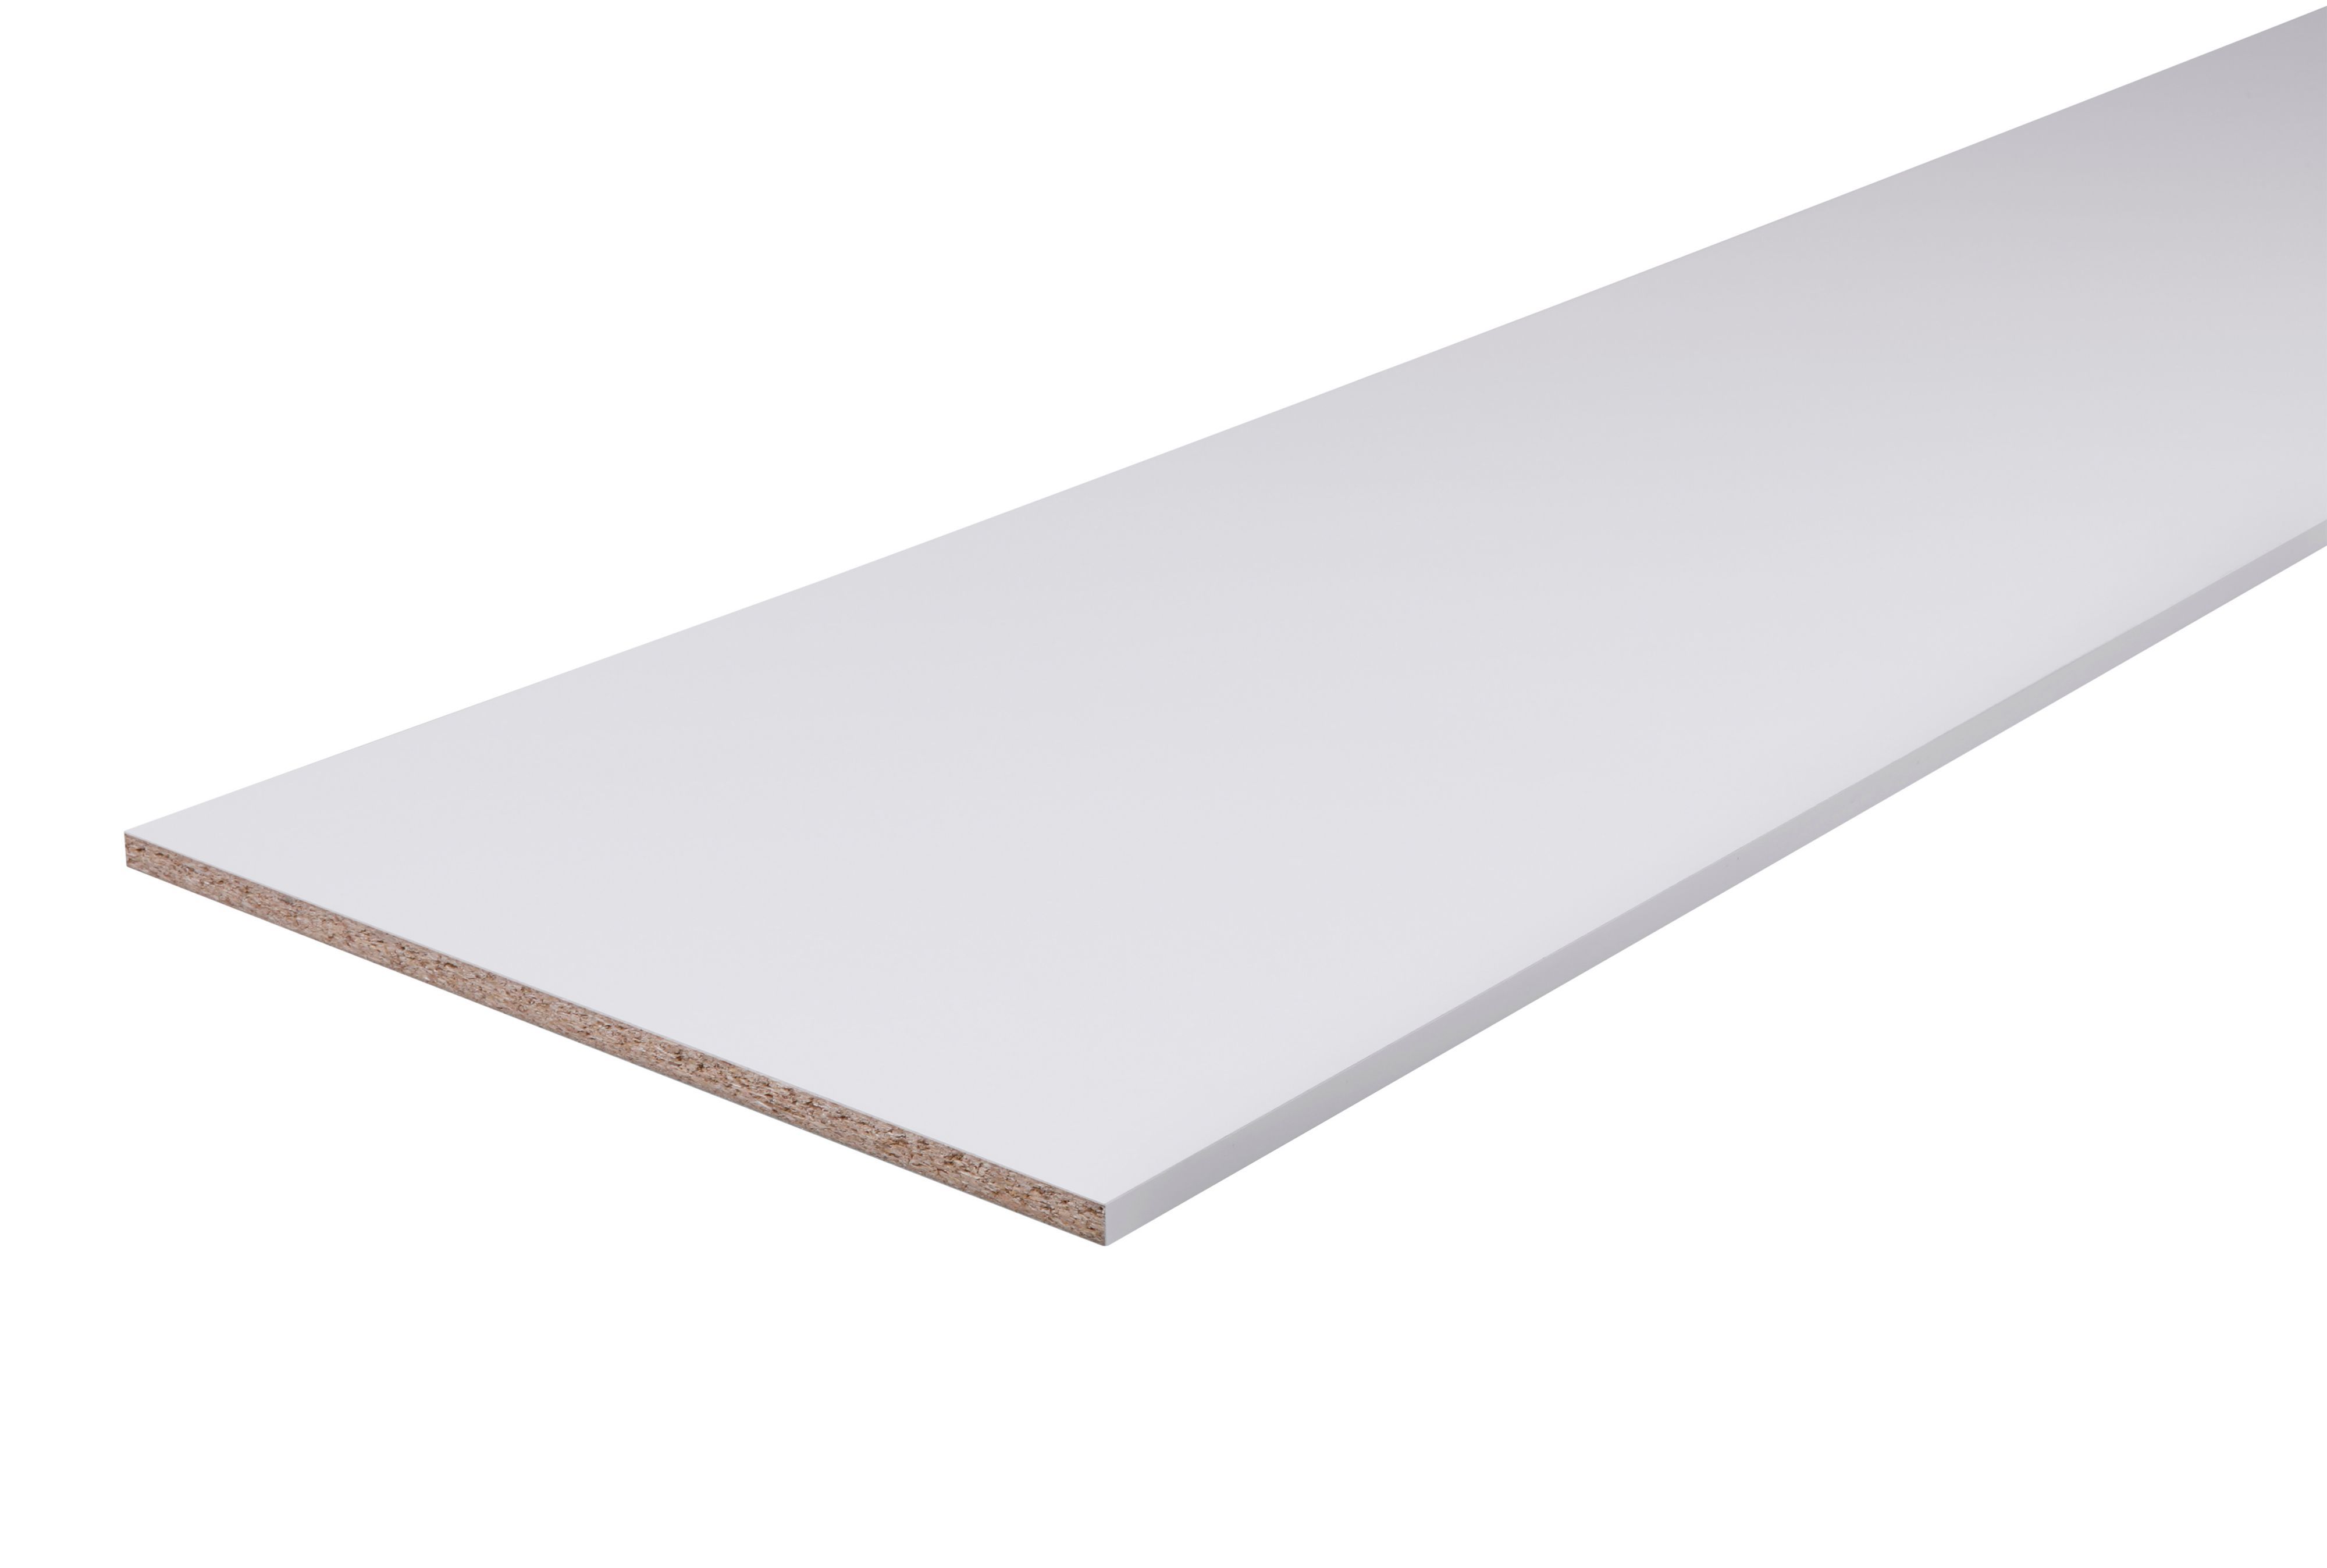 White Semi Edged Chipboard Furniture Board L 2 5m W 600mm T 18mm Diy At B Q